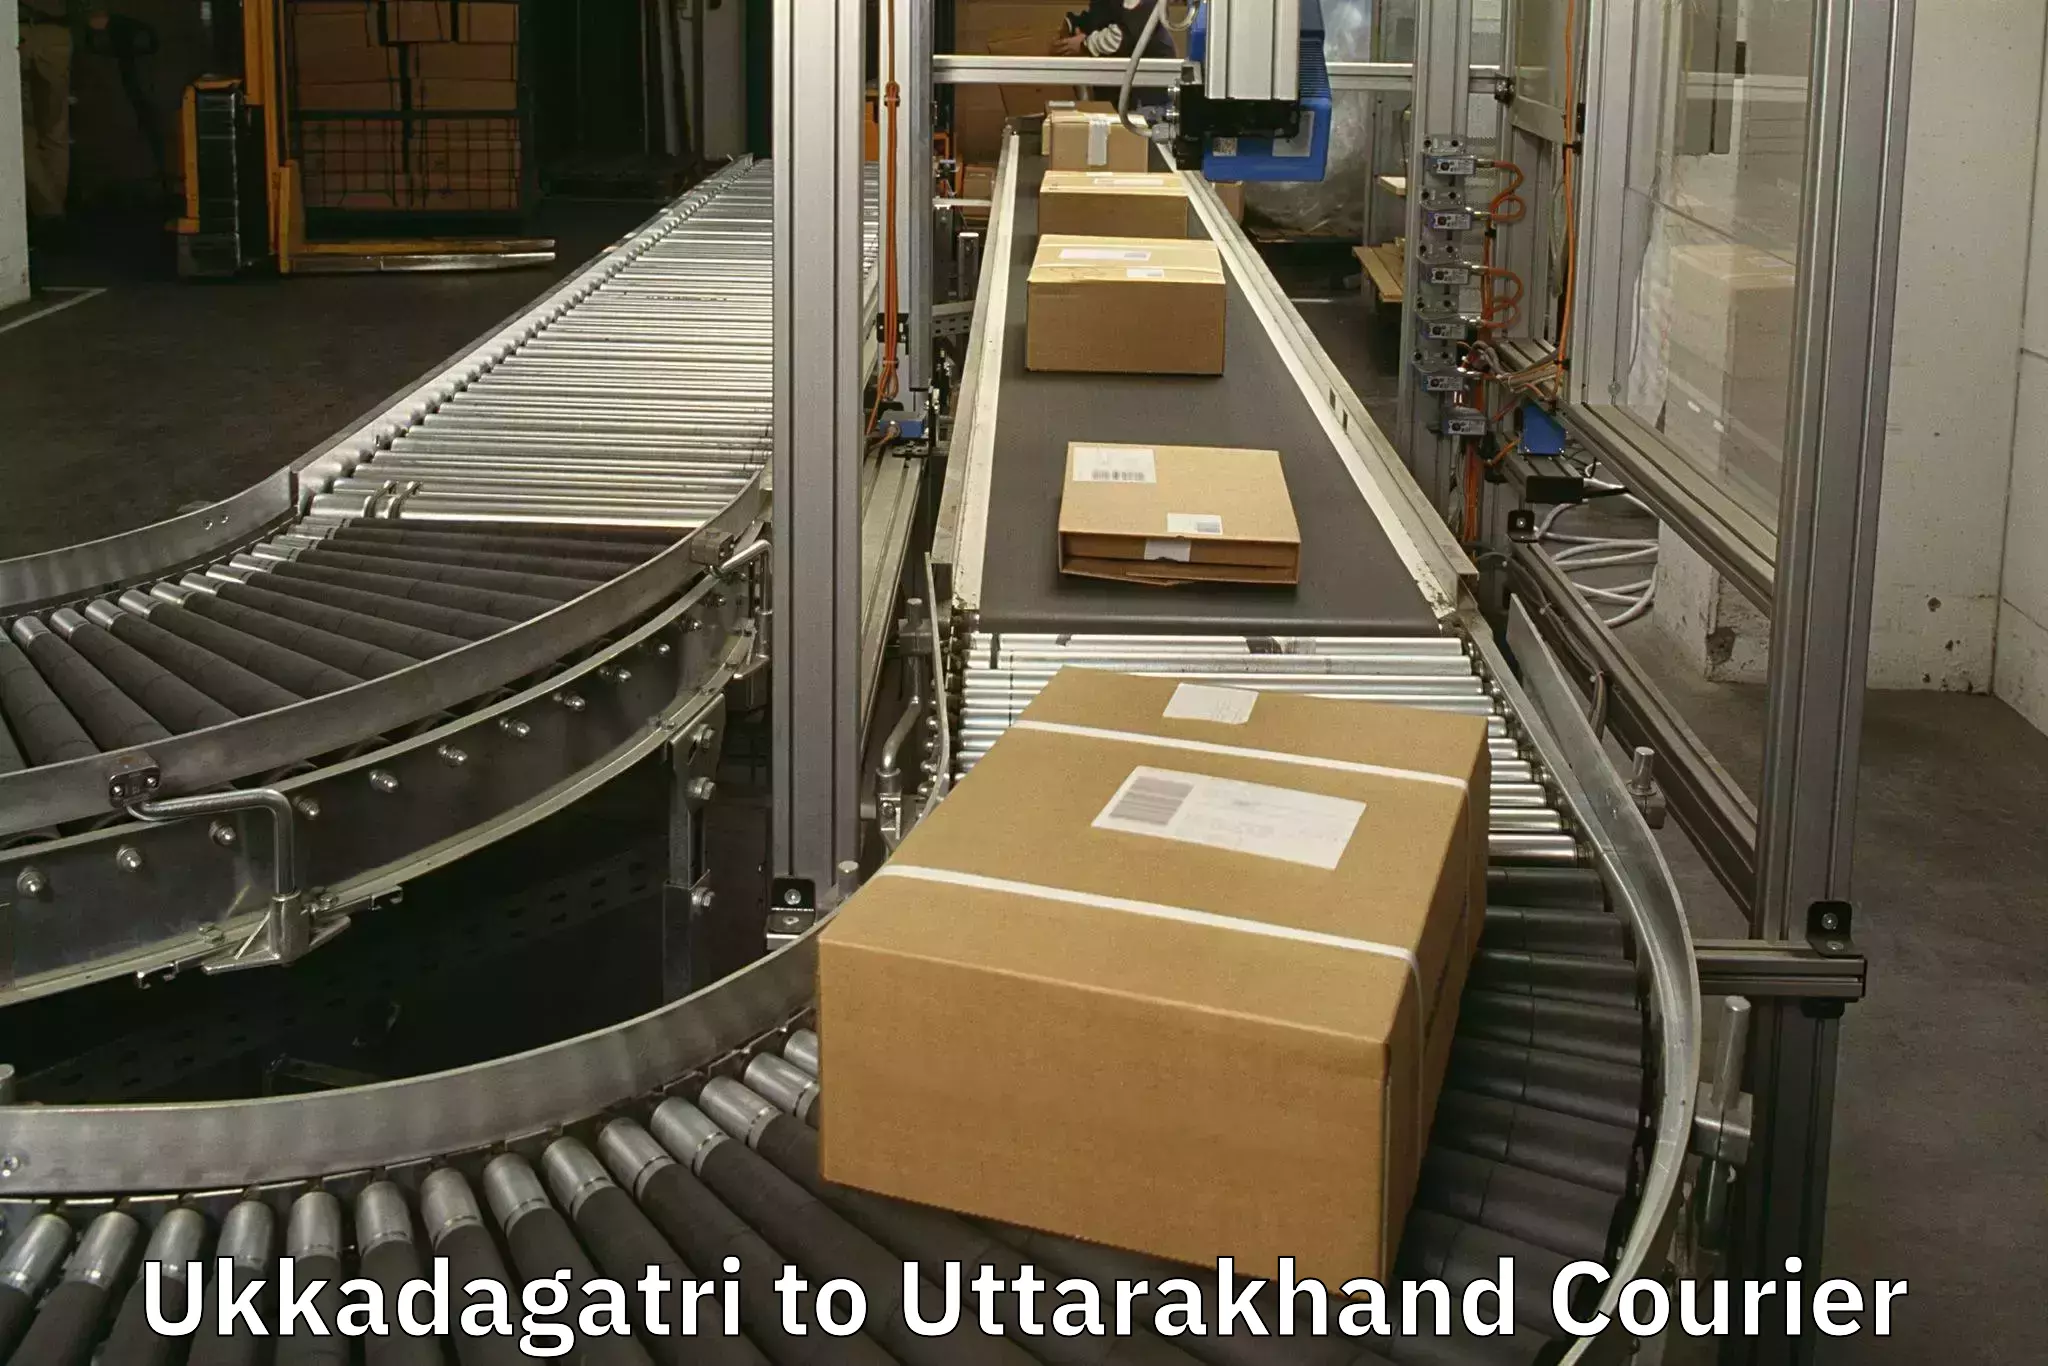 Personal effects shipping Ukkadagatri to Champawat